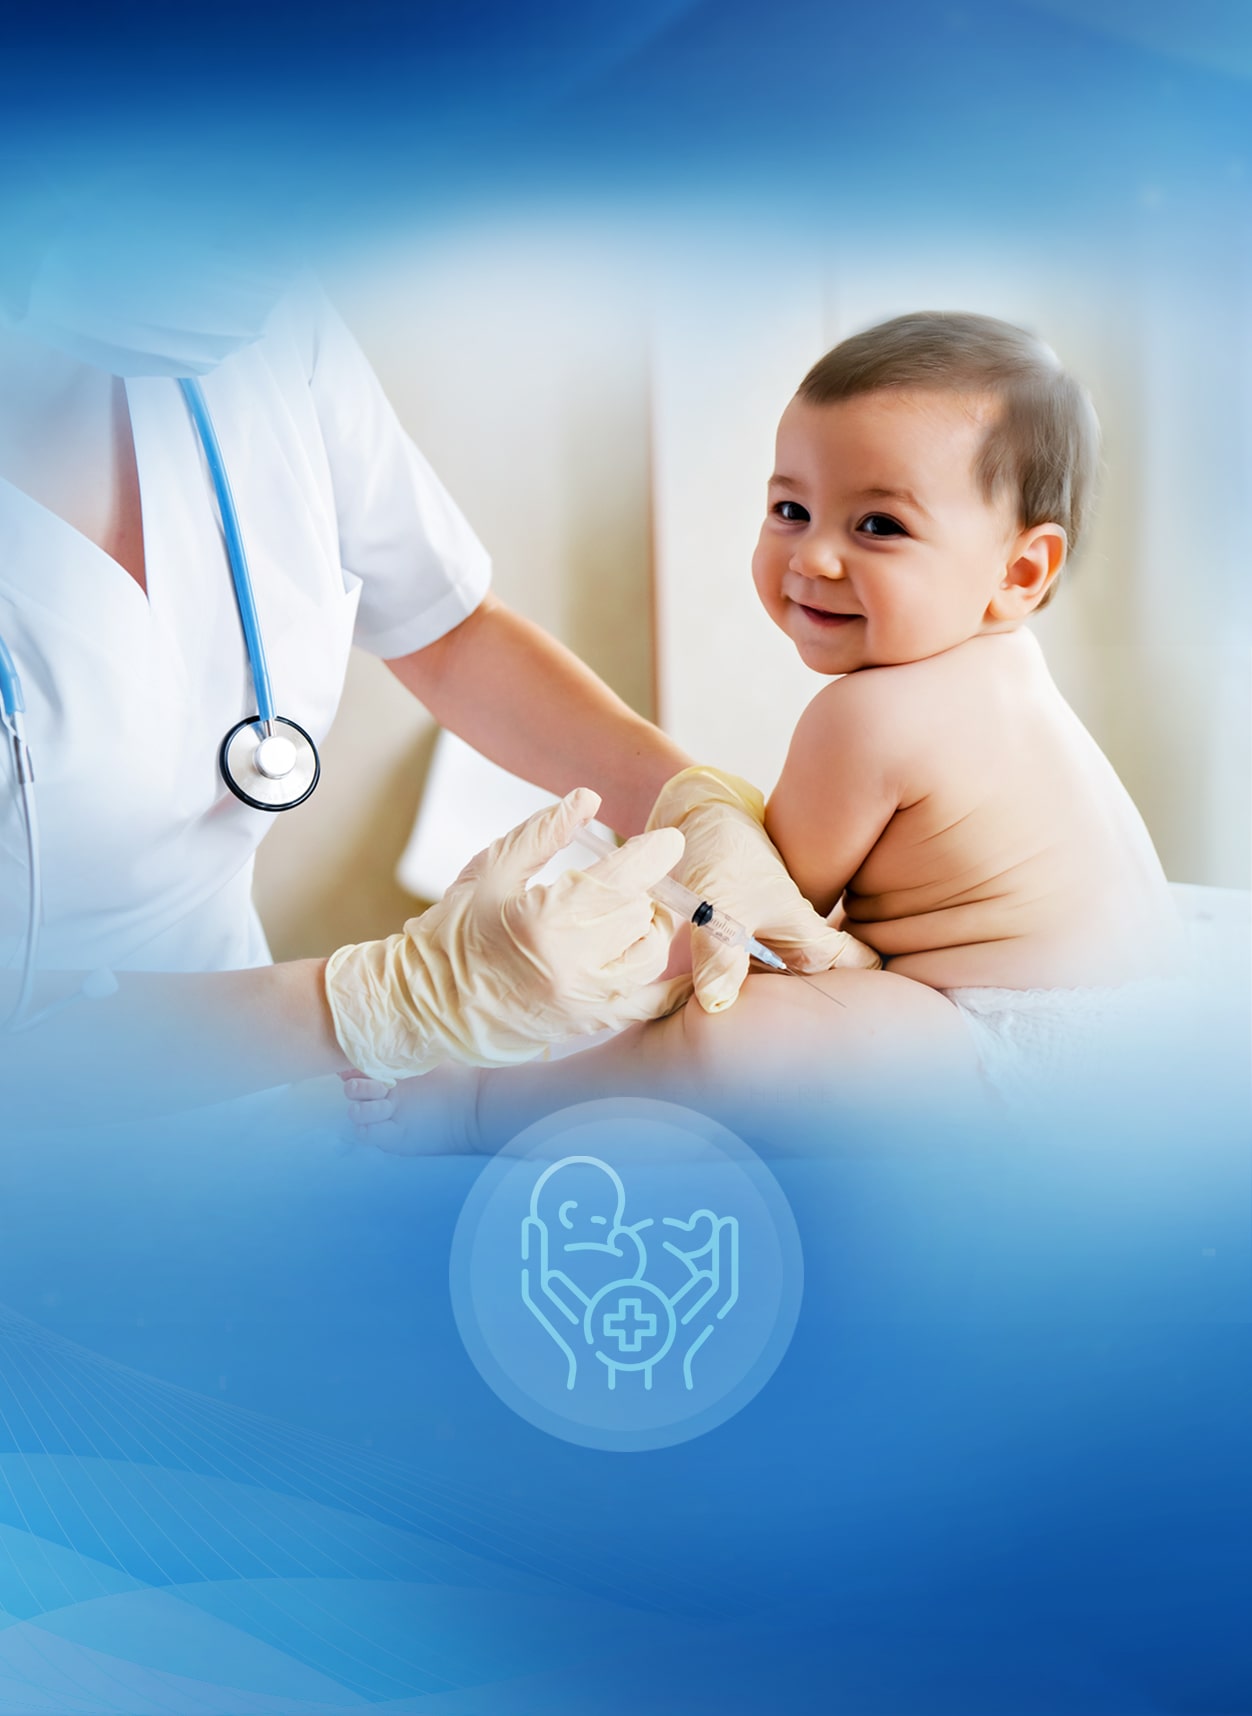 DPU - Best hospital for pediatric surgery